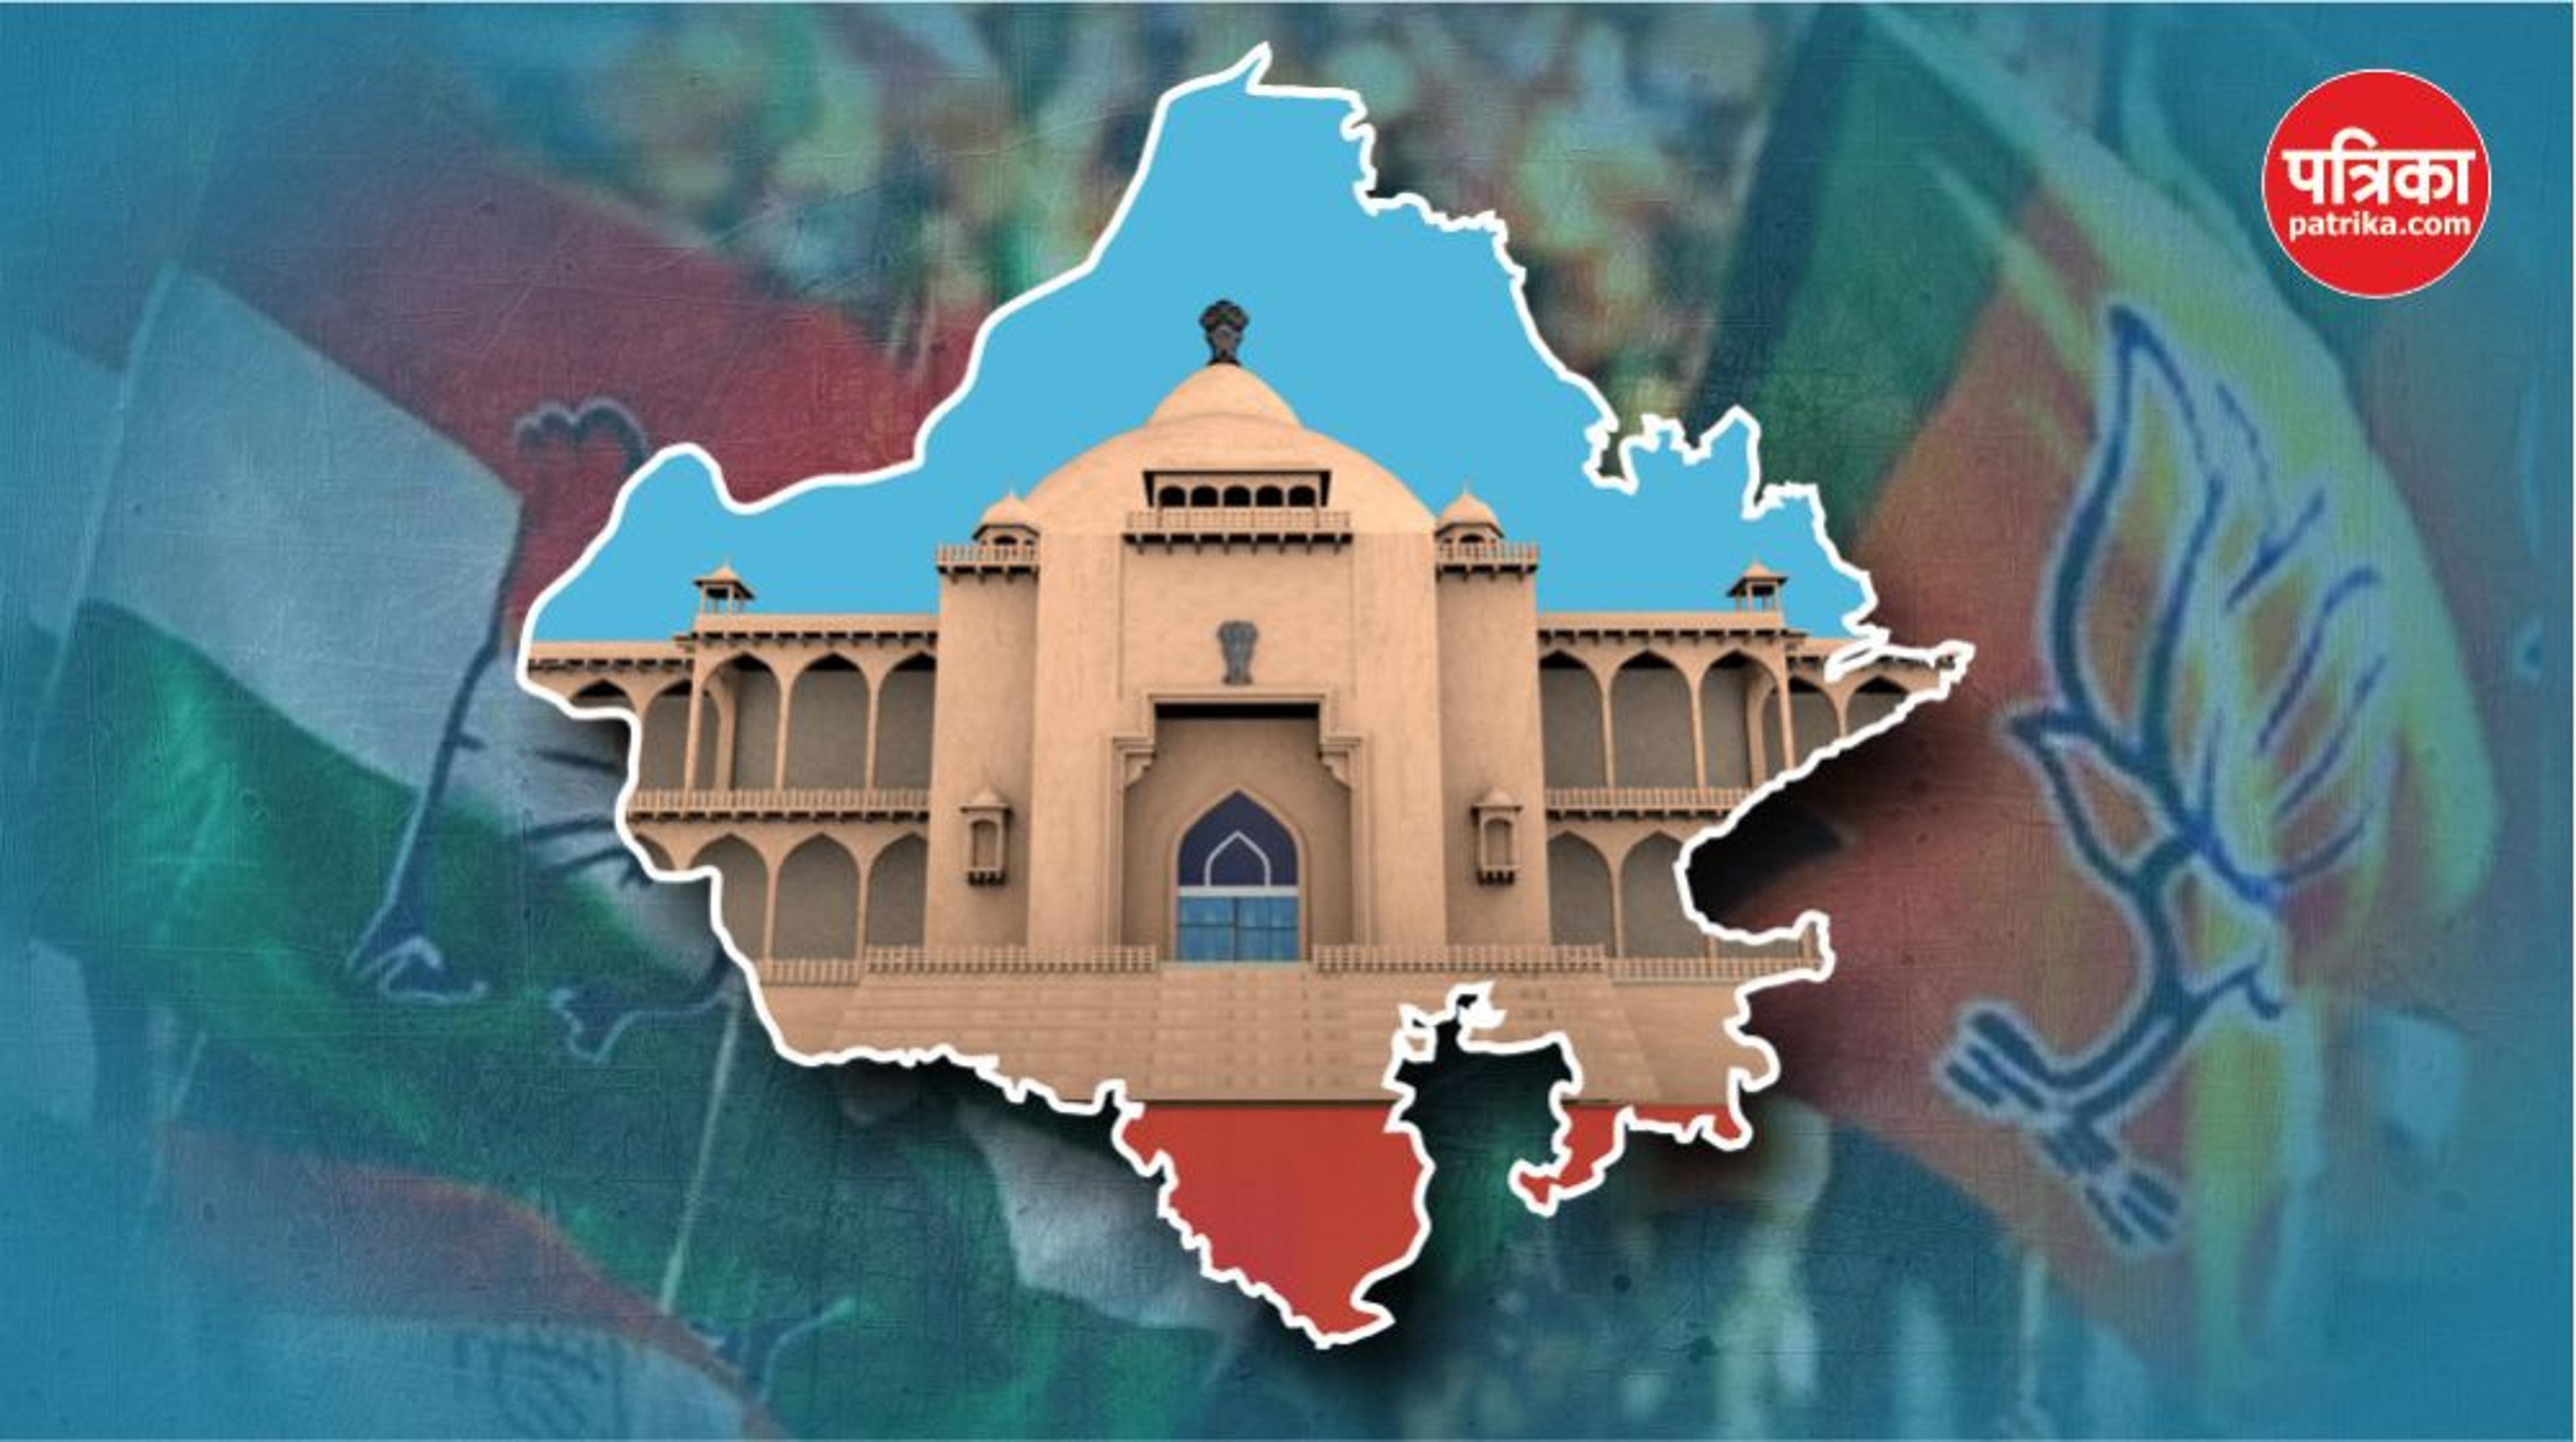 राजस्थान विधानसभा चुनाव: मेवाड़-वागड़, मंडरा रहे आशंकाओं के बादल, क्षेत्रीय दल बिगाड़ रहे दोनों दलों की गणित